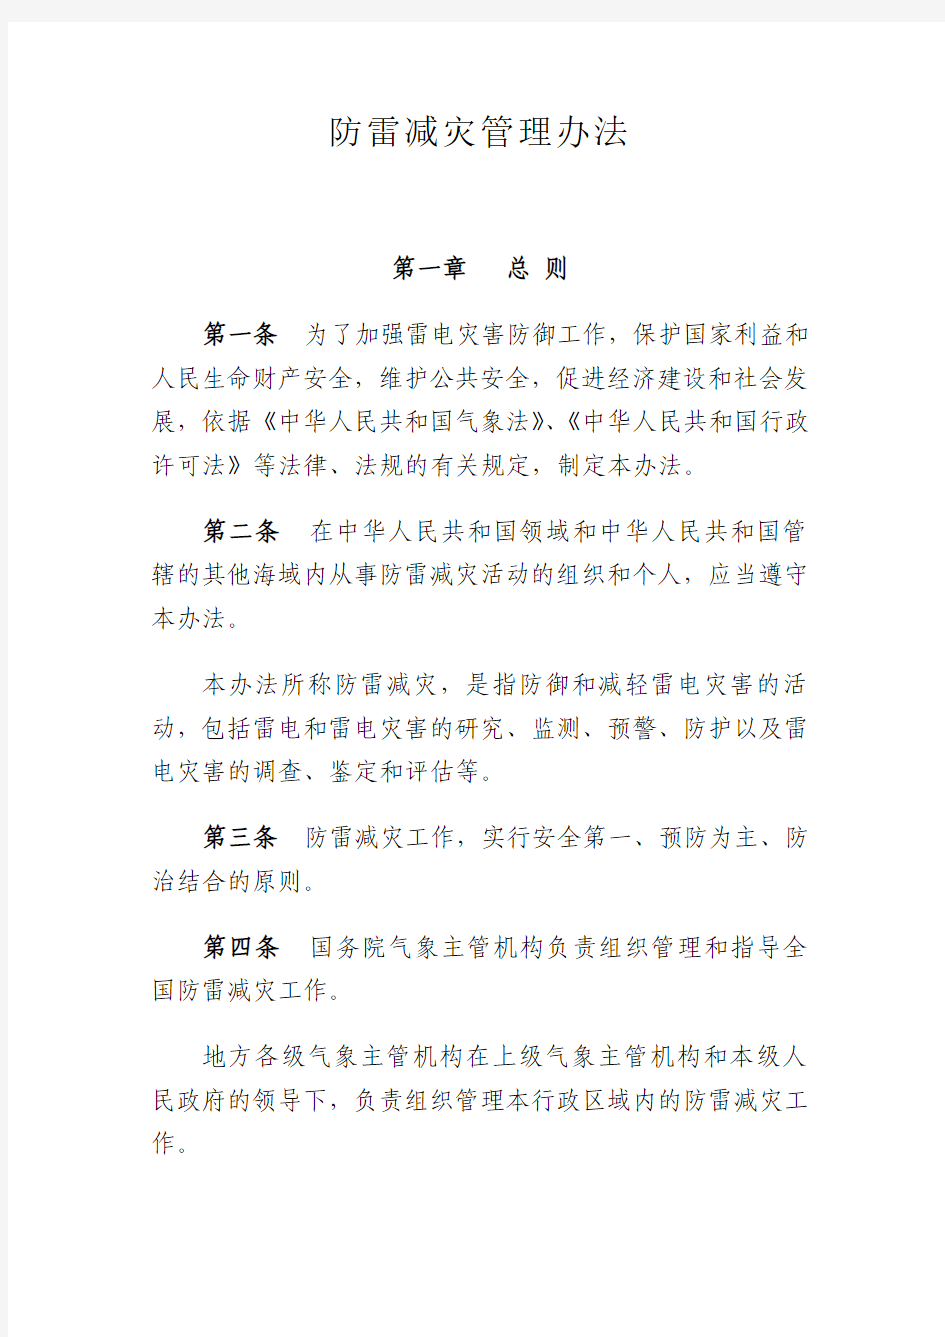 中国气象局令第8号《防雷减灾管理办法》